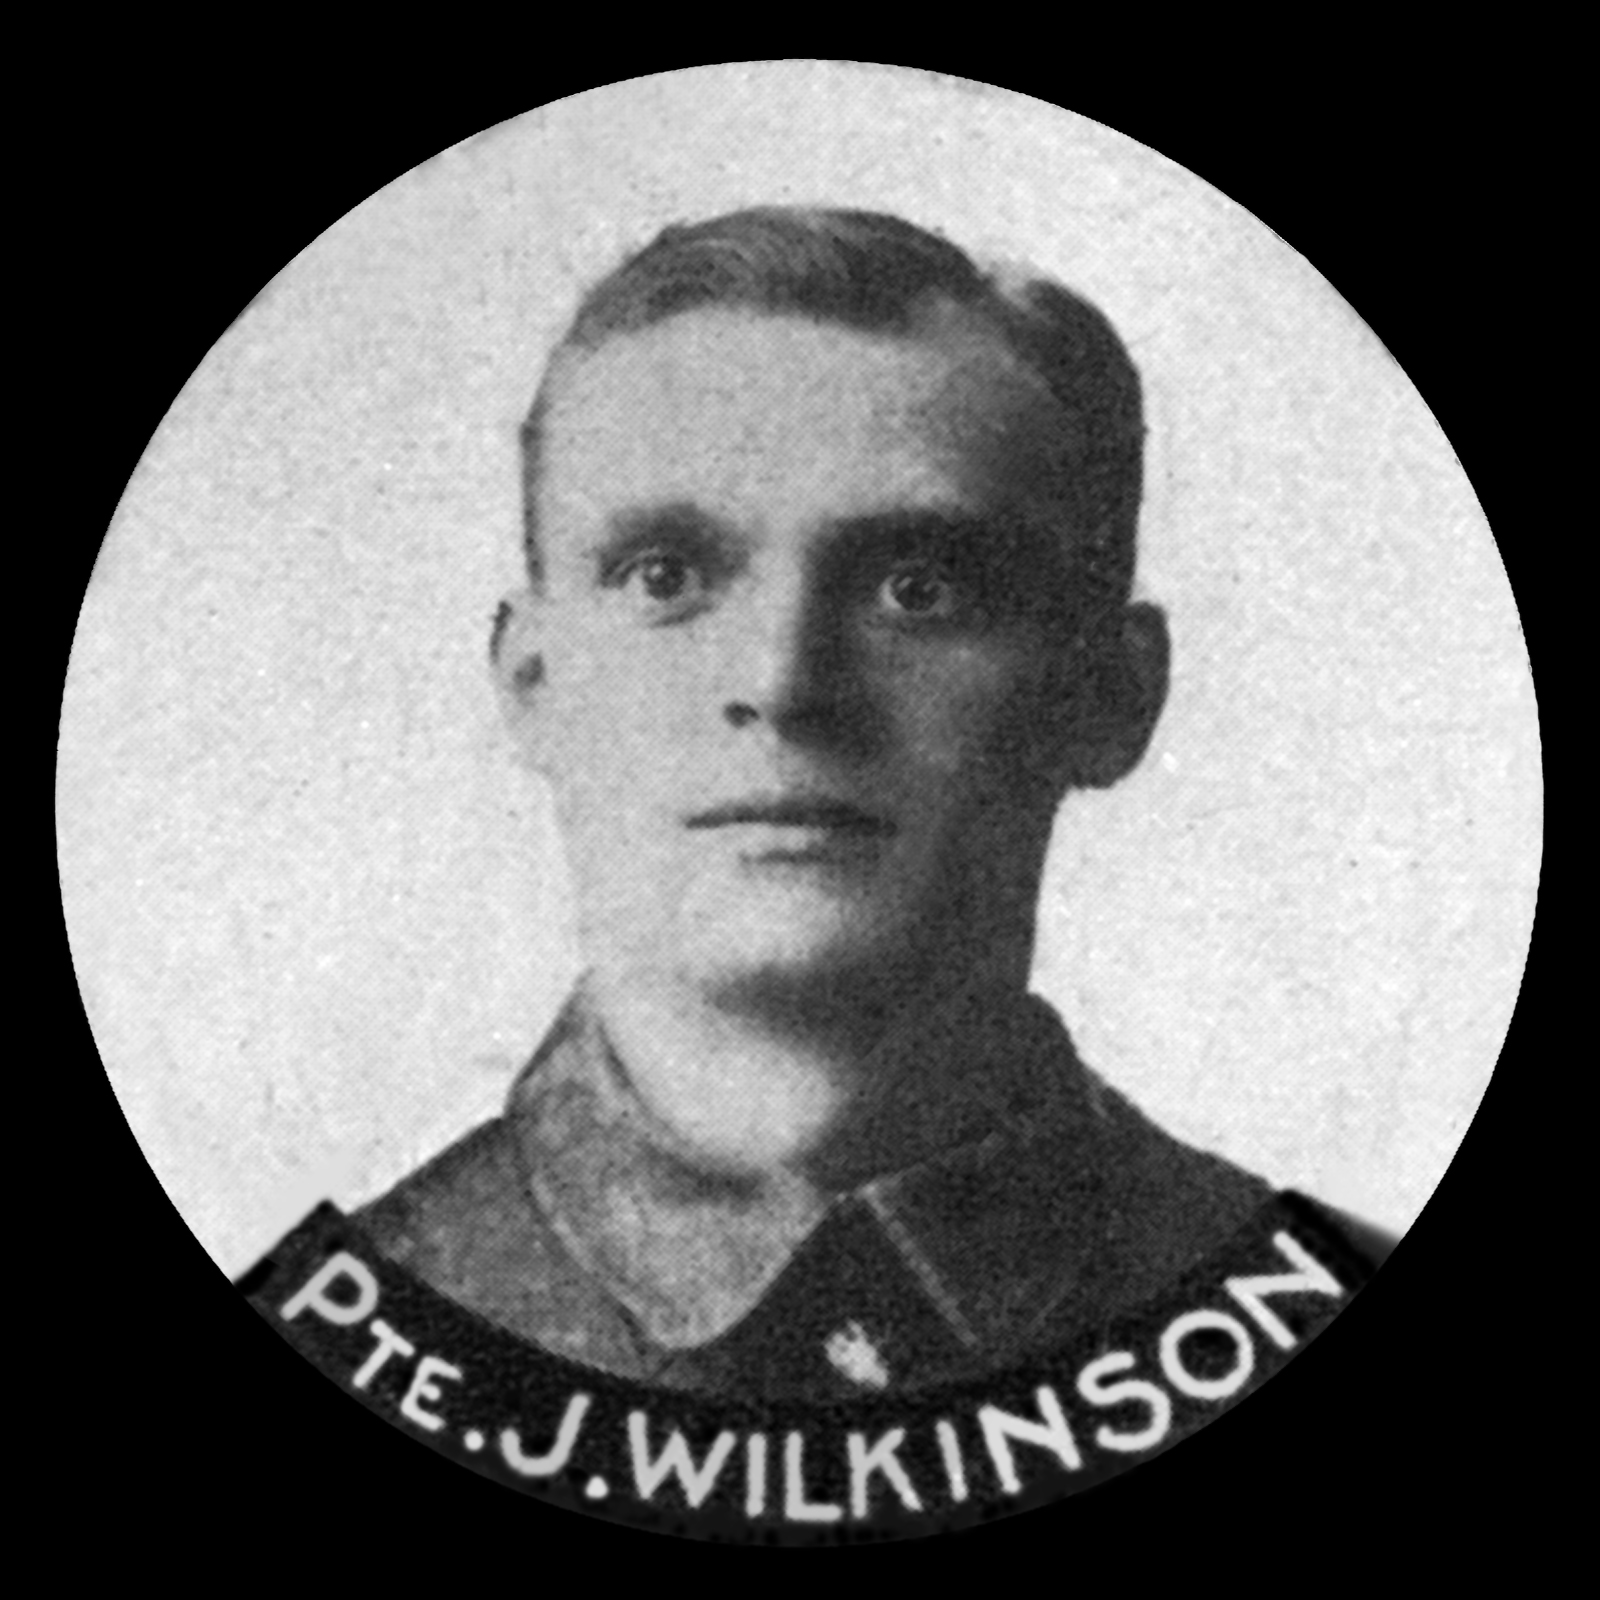 WILKINSON James